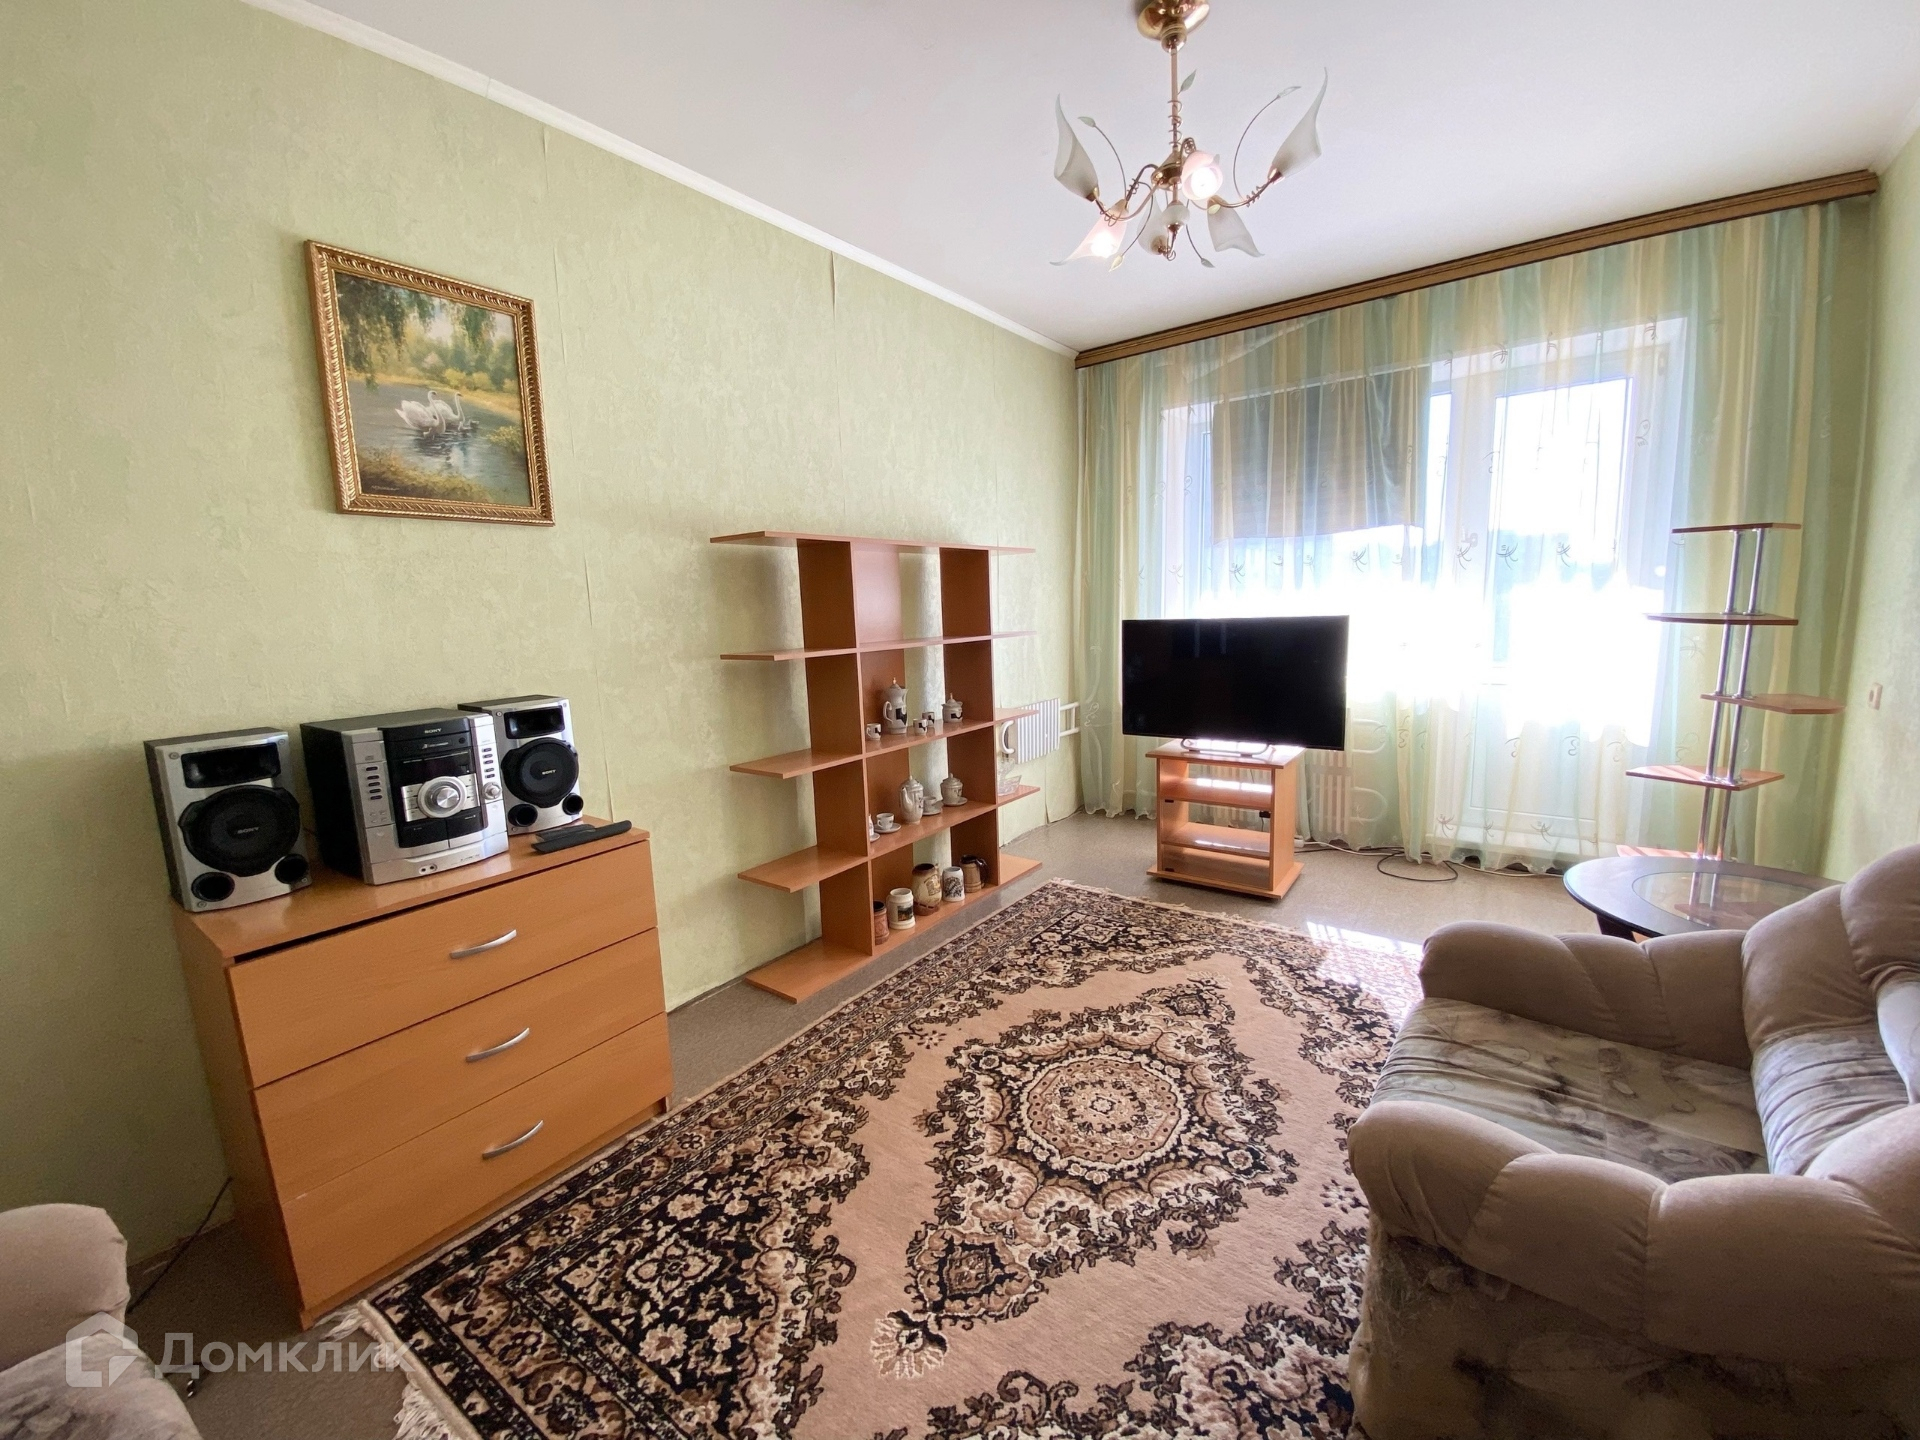 Купить квартиру в железногорске красноярского 2 комнатную